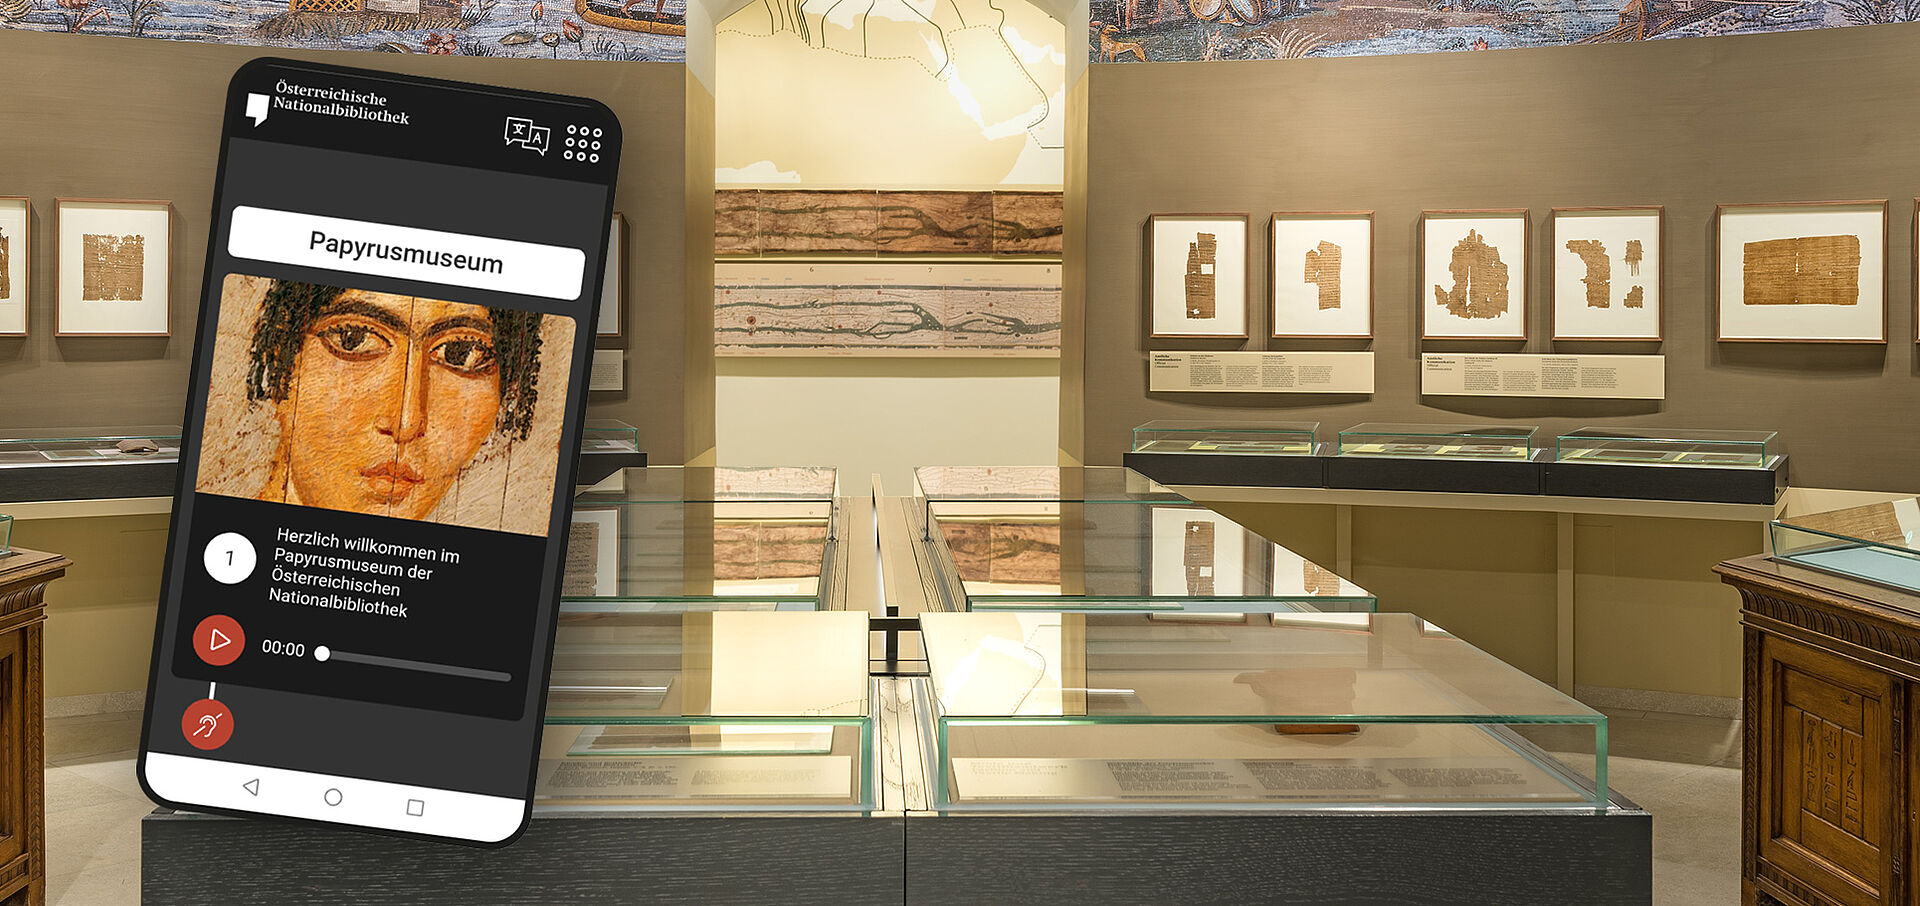 Ansicht des Papyrusmuseums. Links im Bild ein Handy mit einem Ausschnitt des Audioguides. Bild von schwarzgelockter Frau.